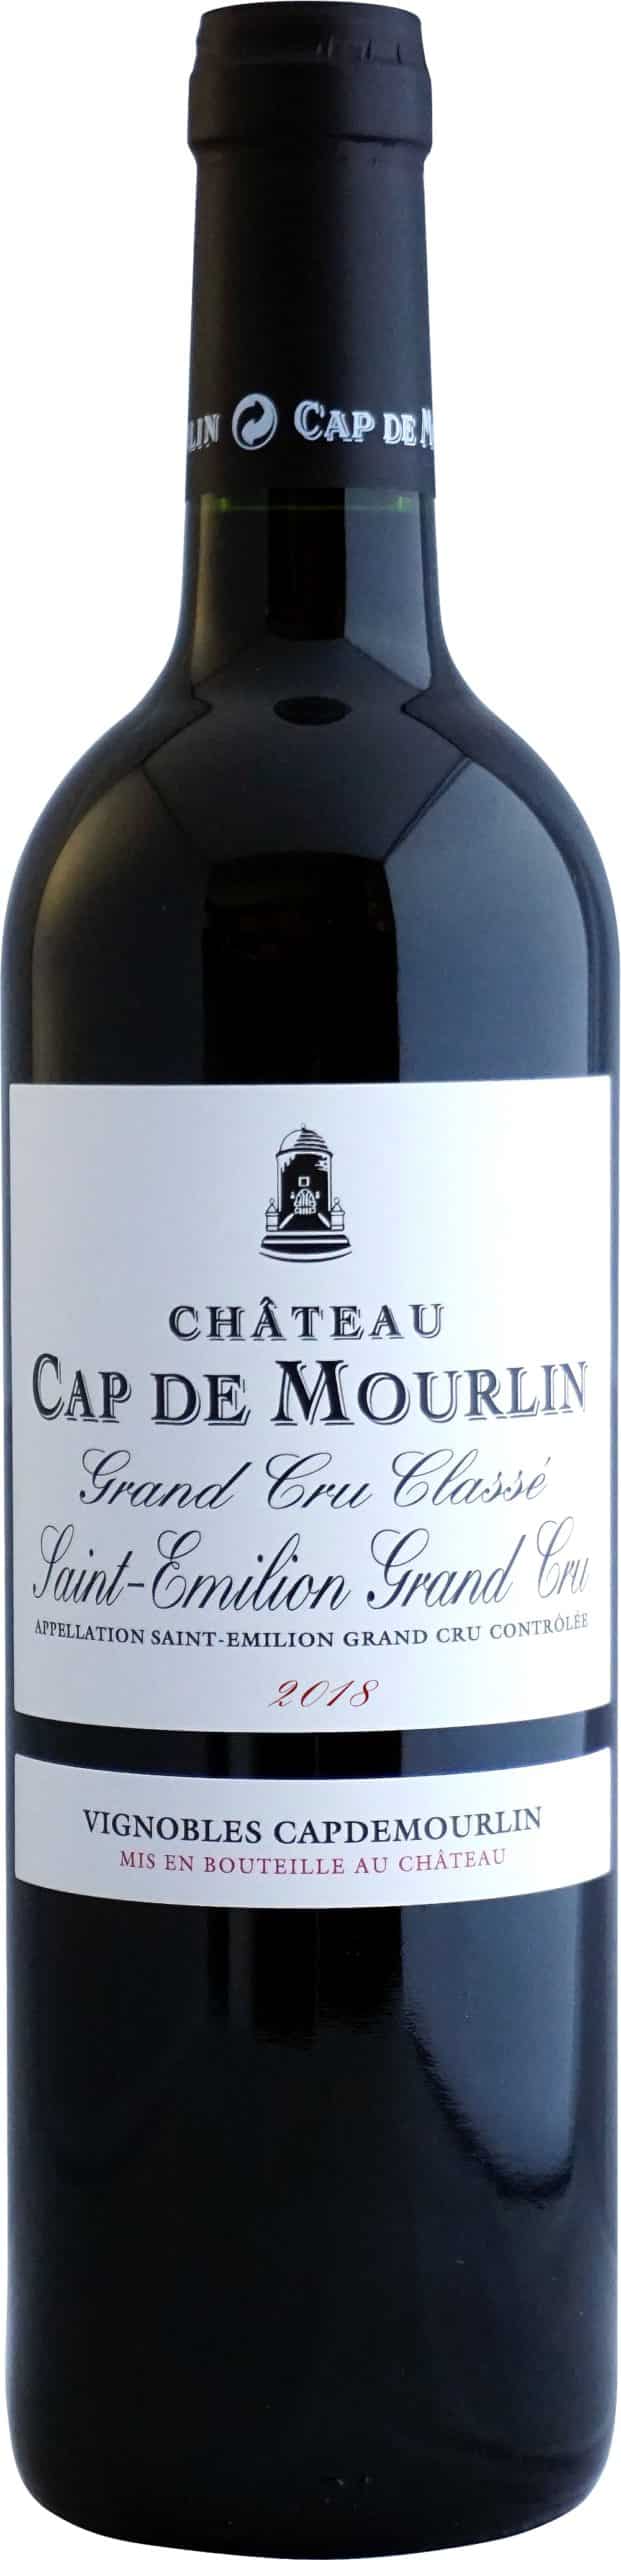 label wine bottle Cap deMourlin